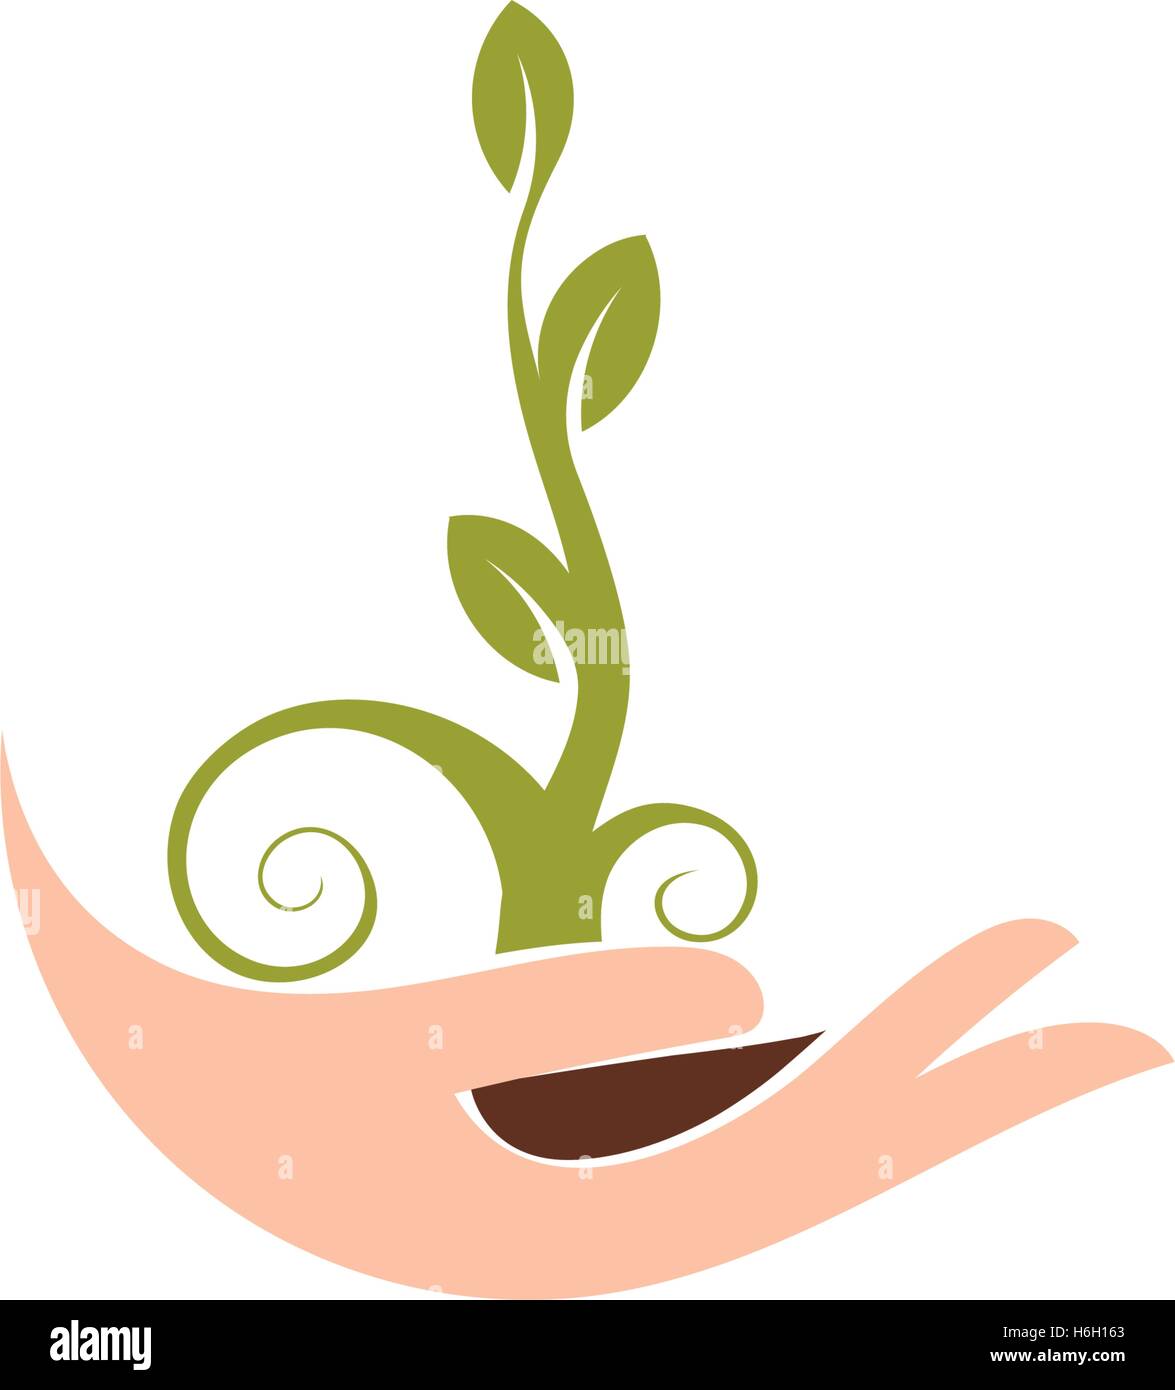 Abstract natural isolés logotype. Couleur Vert plante dans des mains d'un logo. Sprout dans palms icône. Signe de jardinage. Symbole de la croissance et du développement. Vector illustration de la protection de la nature. Illustration de Vecteur